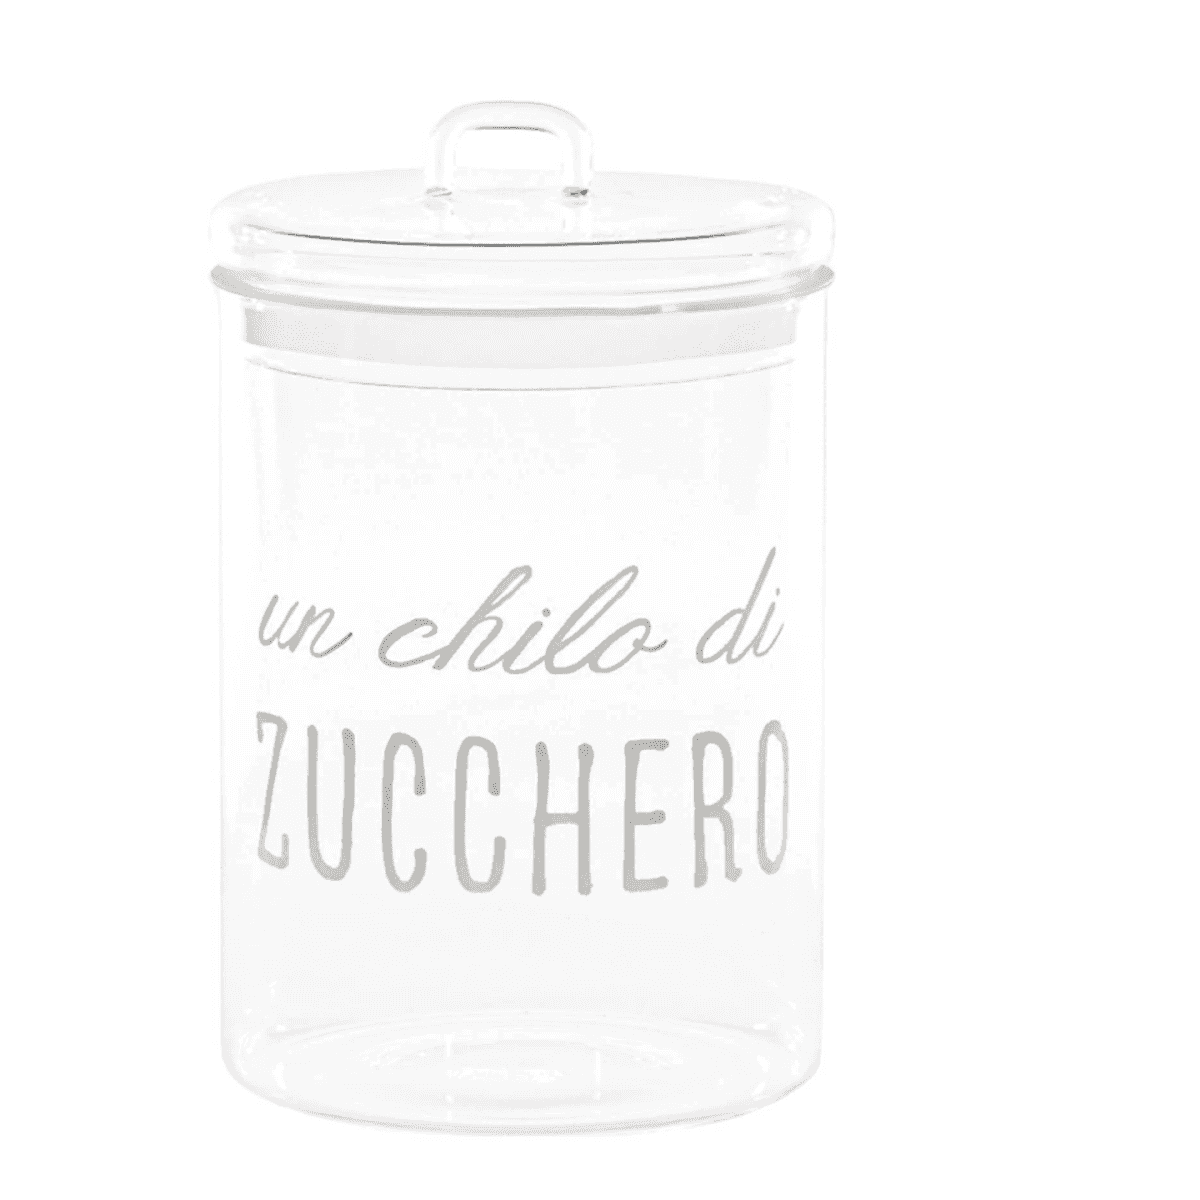 Immagine del prodotto Barattolo in vetro borosilicato Un chilo di Zucchero ø12 cm | Simple Day